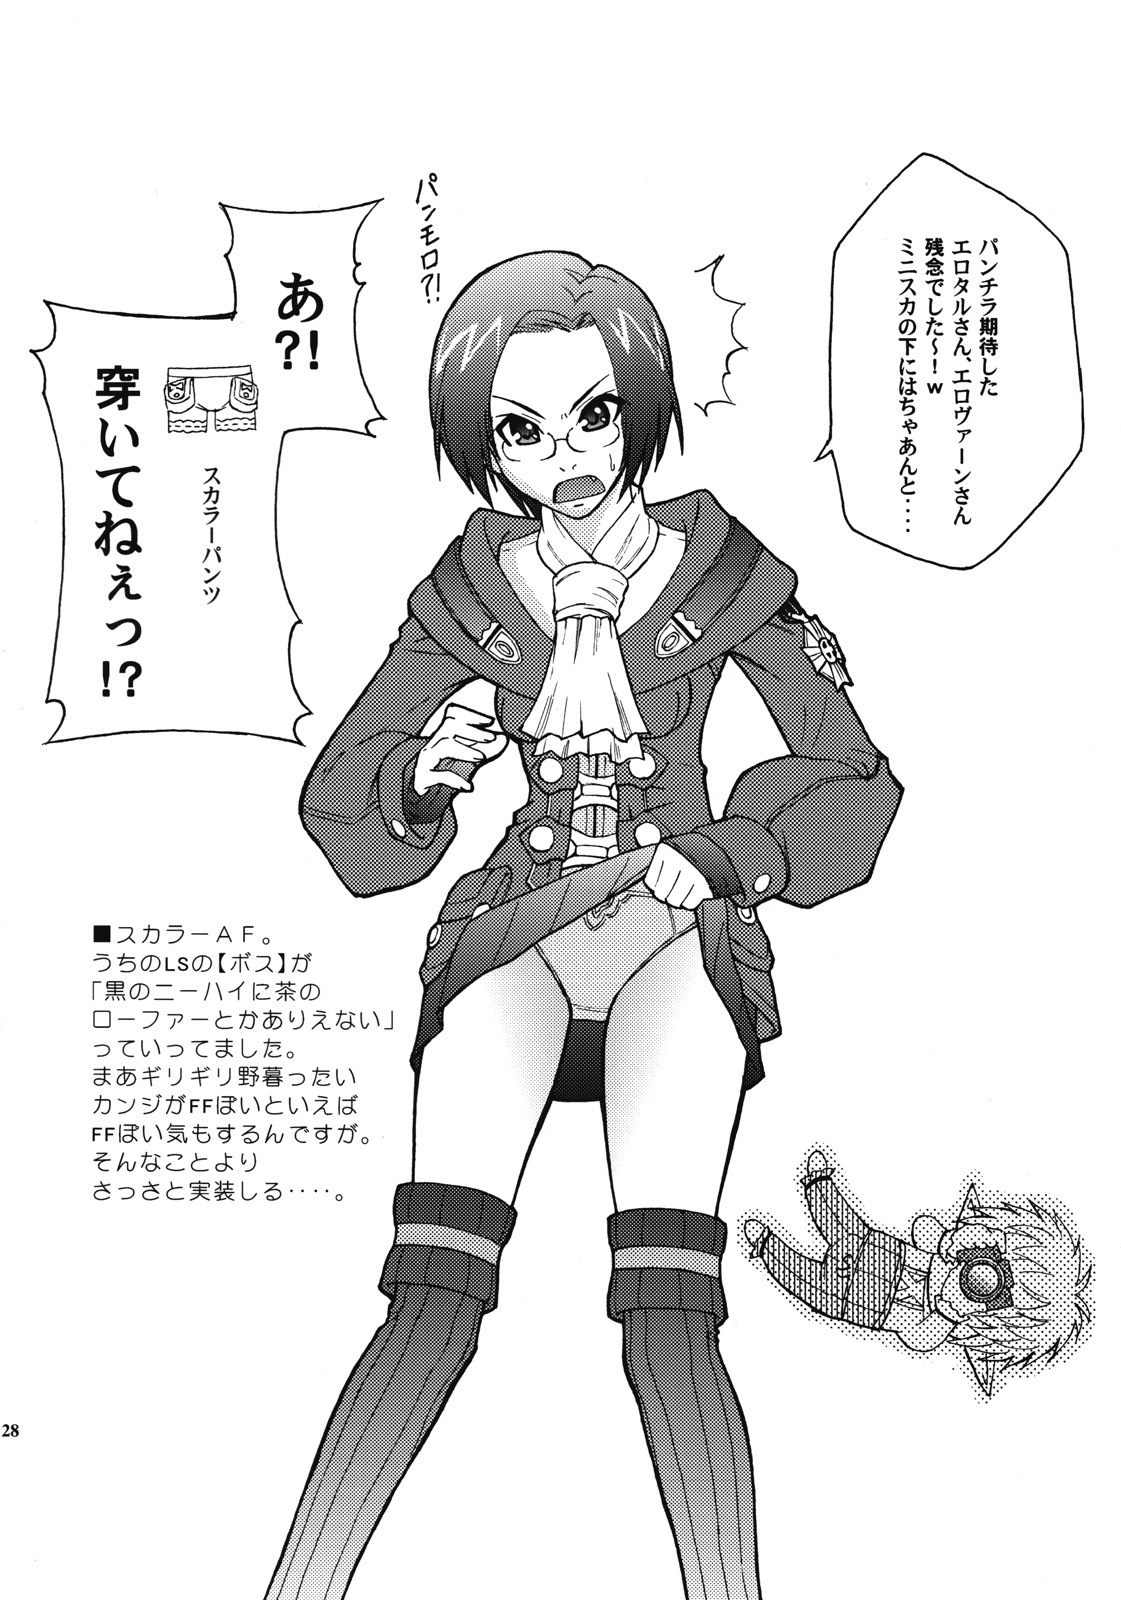 [ARCHENEMY (Kasumi Ryo)] Ein Joghurt wie ein Honig-Dessert. EXTENDED EDITION (Final Fantasy XI) page 27 full